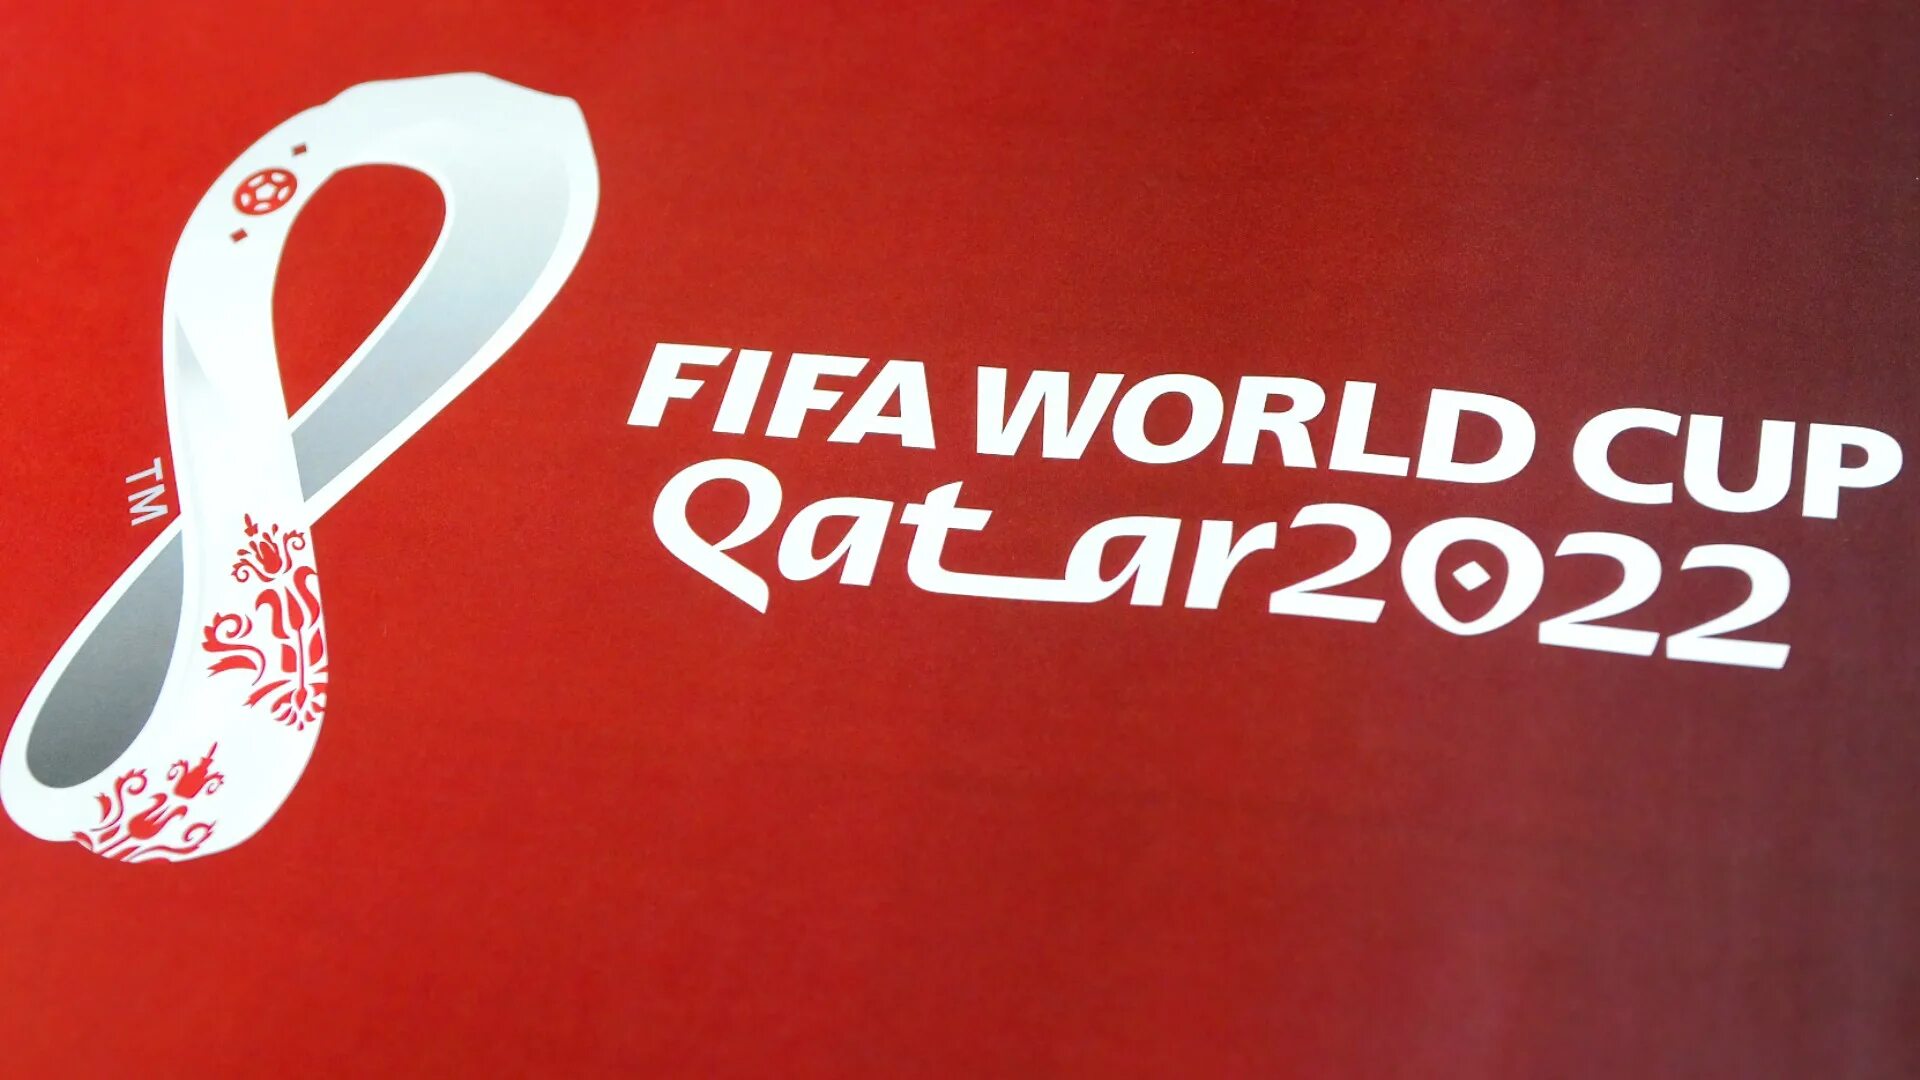 ФИФА ворлд кап Катар 2022. Кубок ФИФА 2022 Катар. 2022 Чб. Fifa qatar